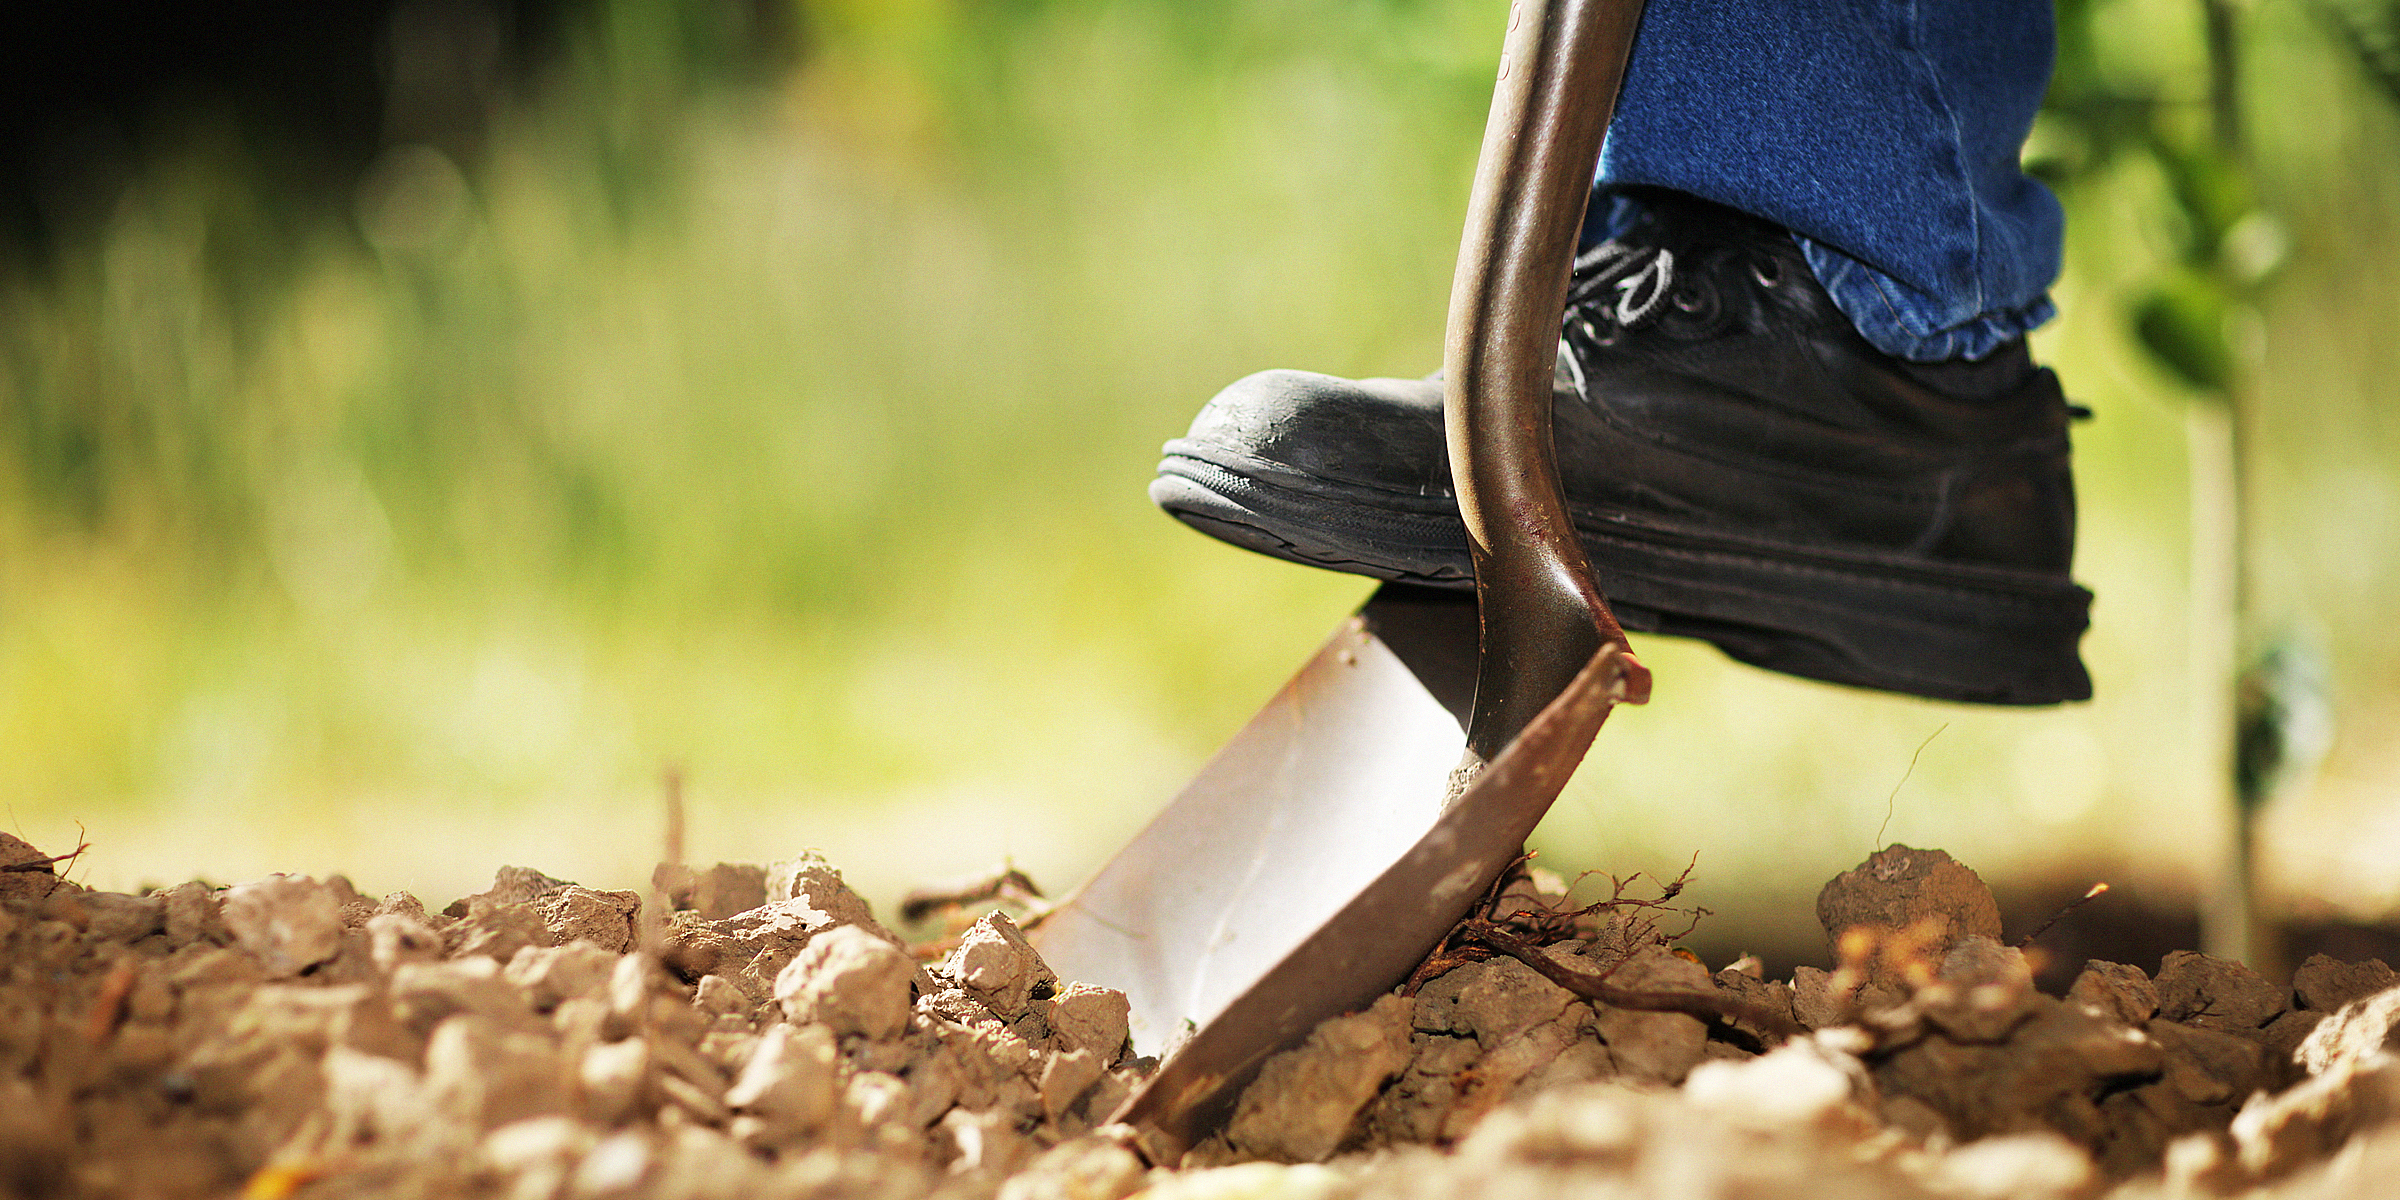 Personne creusant la terre avec une pelle | Source : Shutterstock